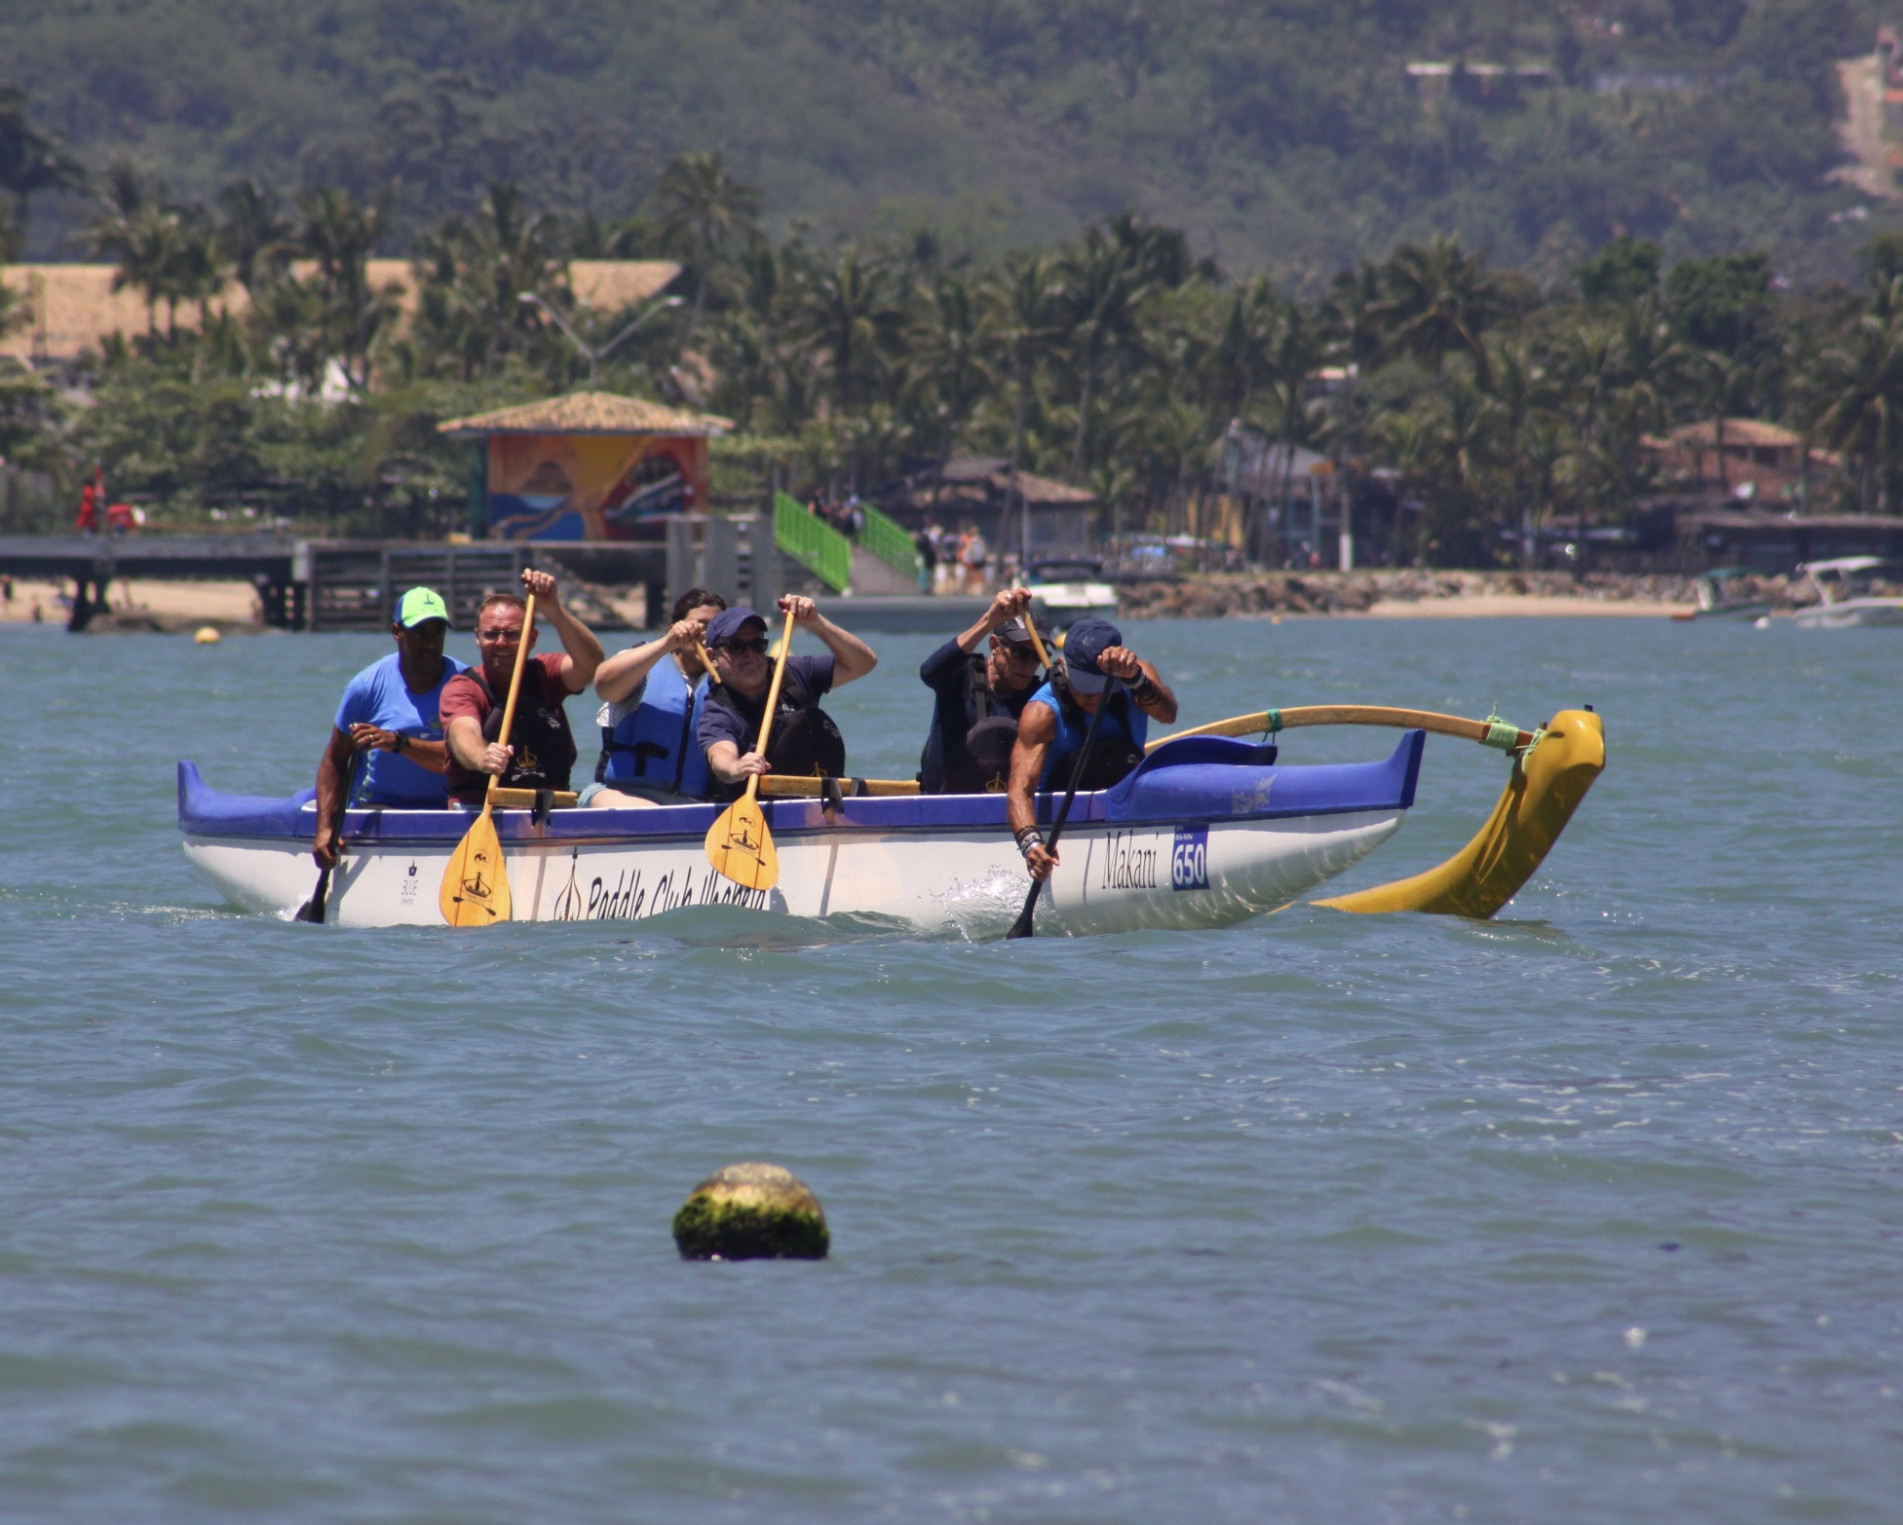 Canoa havaiana é um esporte em crescimento em Ilhabela